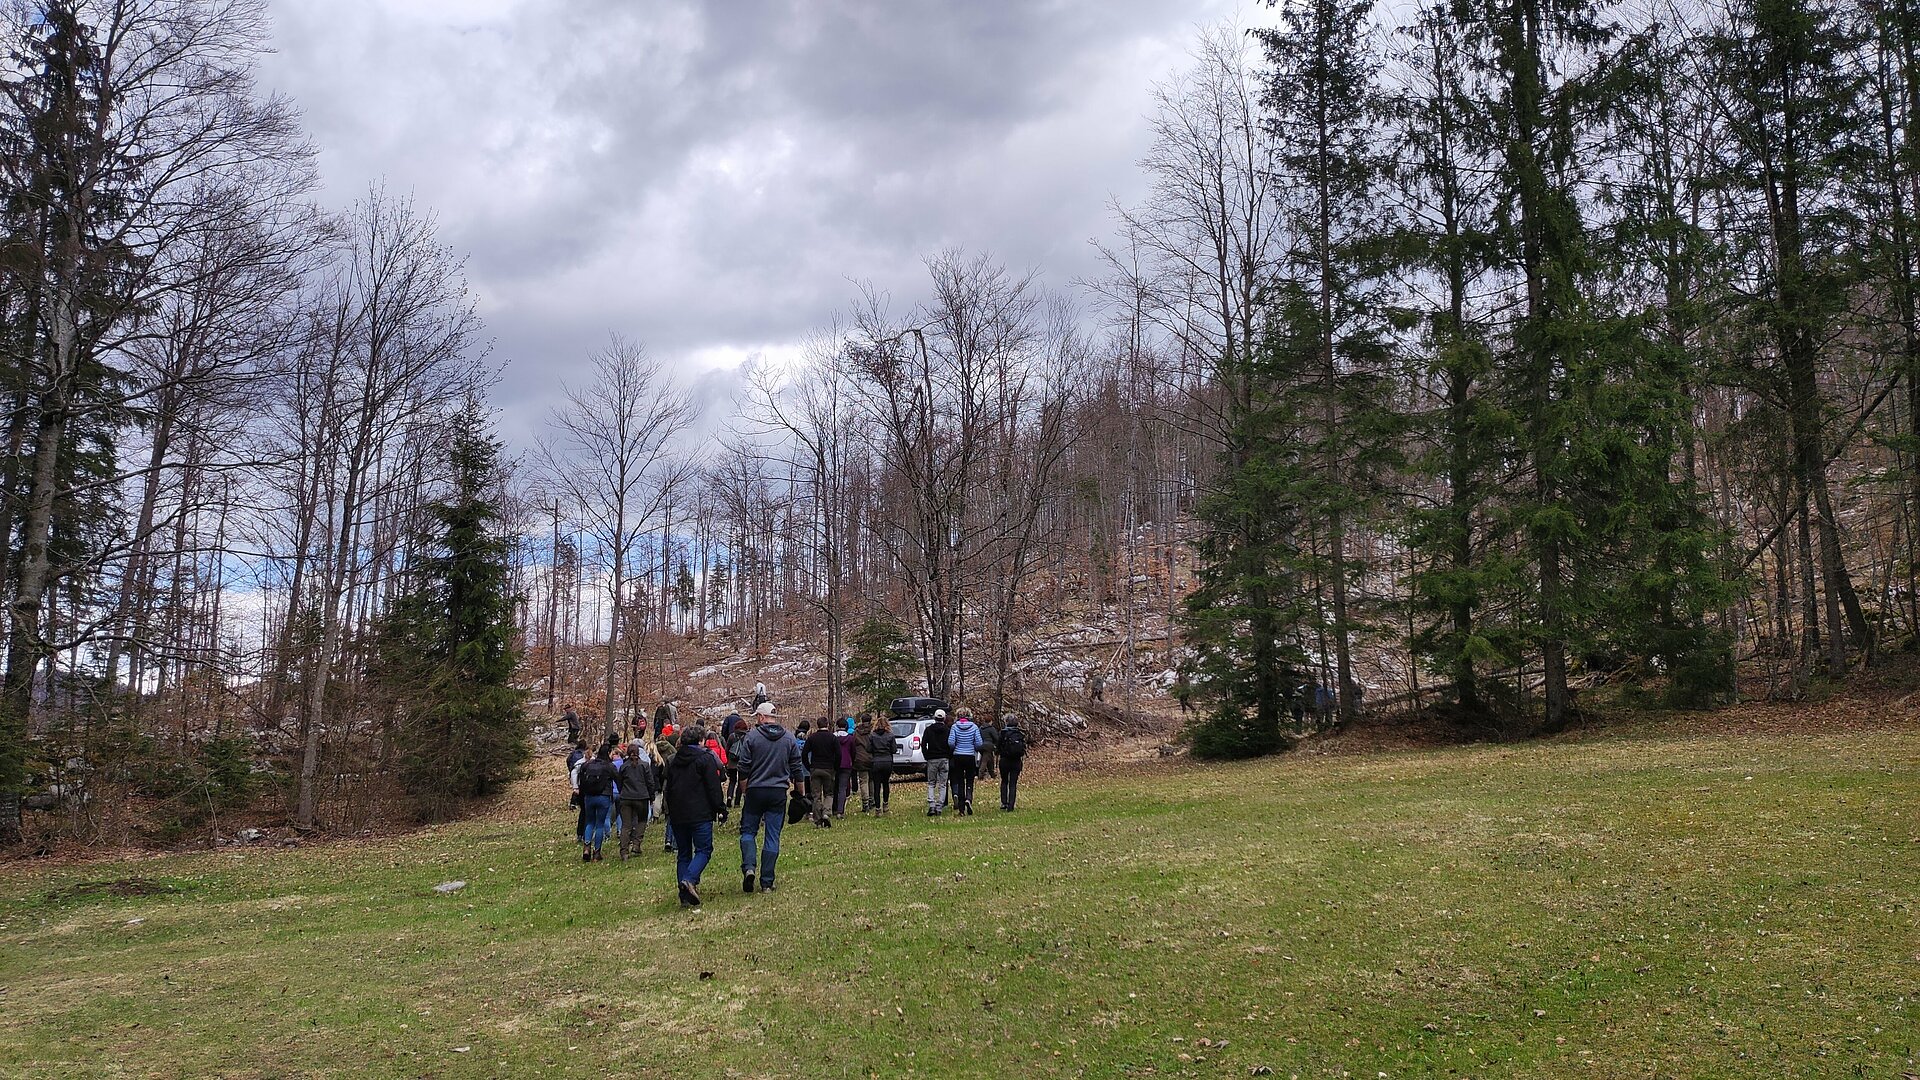 Izpust risa Lukaša v gorenjske gozdove, množica ljudi v gozdu proti obori risa (Foto: Vesna Petkovska, MNVP)